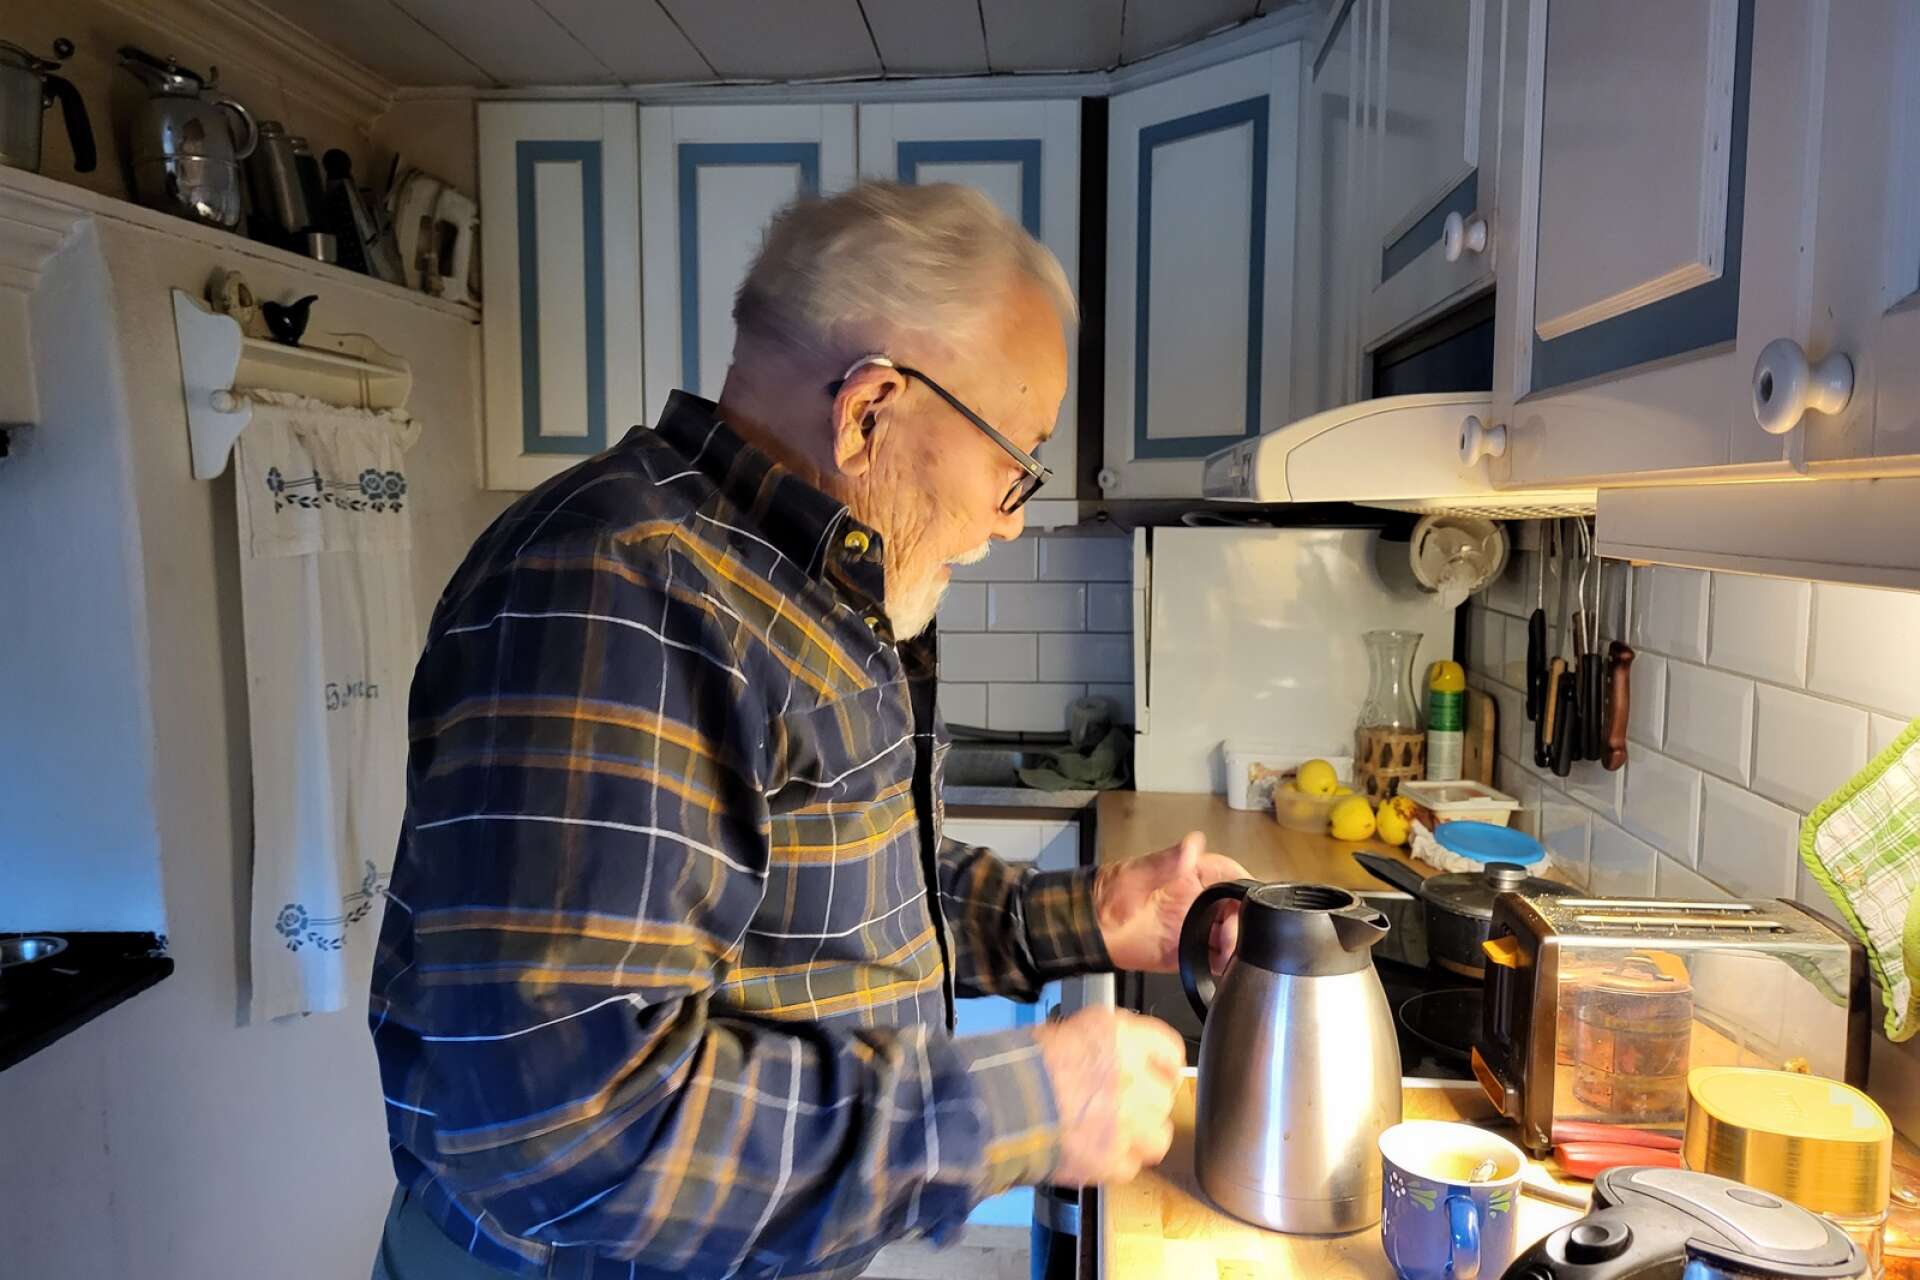 Raskt sätter Pauli på kaffet i köket. Han har alltid gillat att vara en sån där hemmaman, att baka bröd och stöka i köket är inget främmande för honom. 